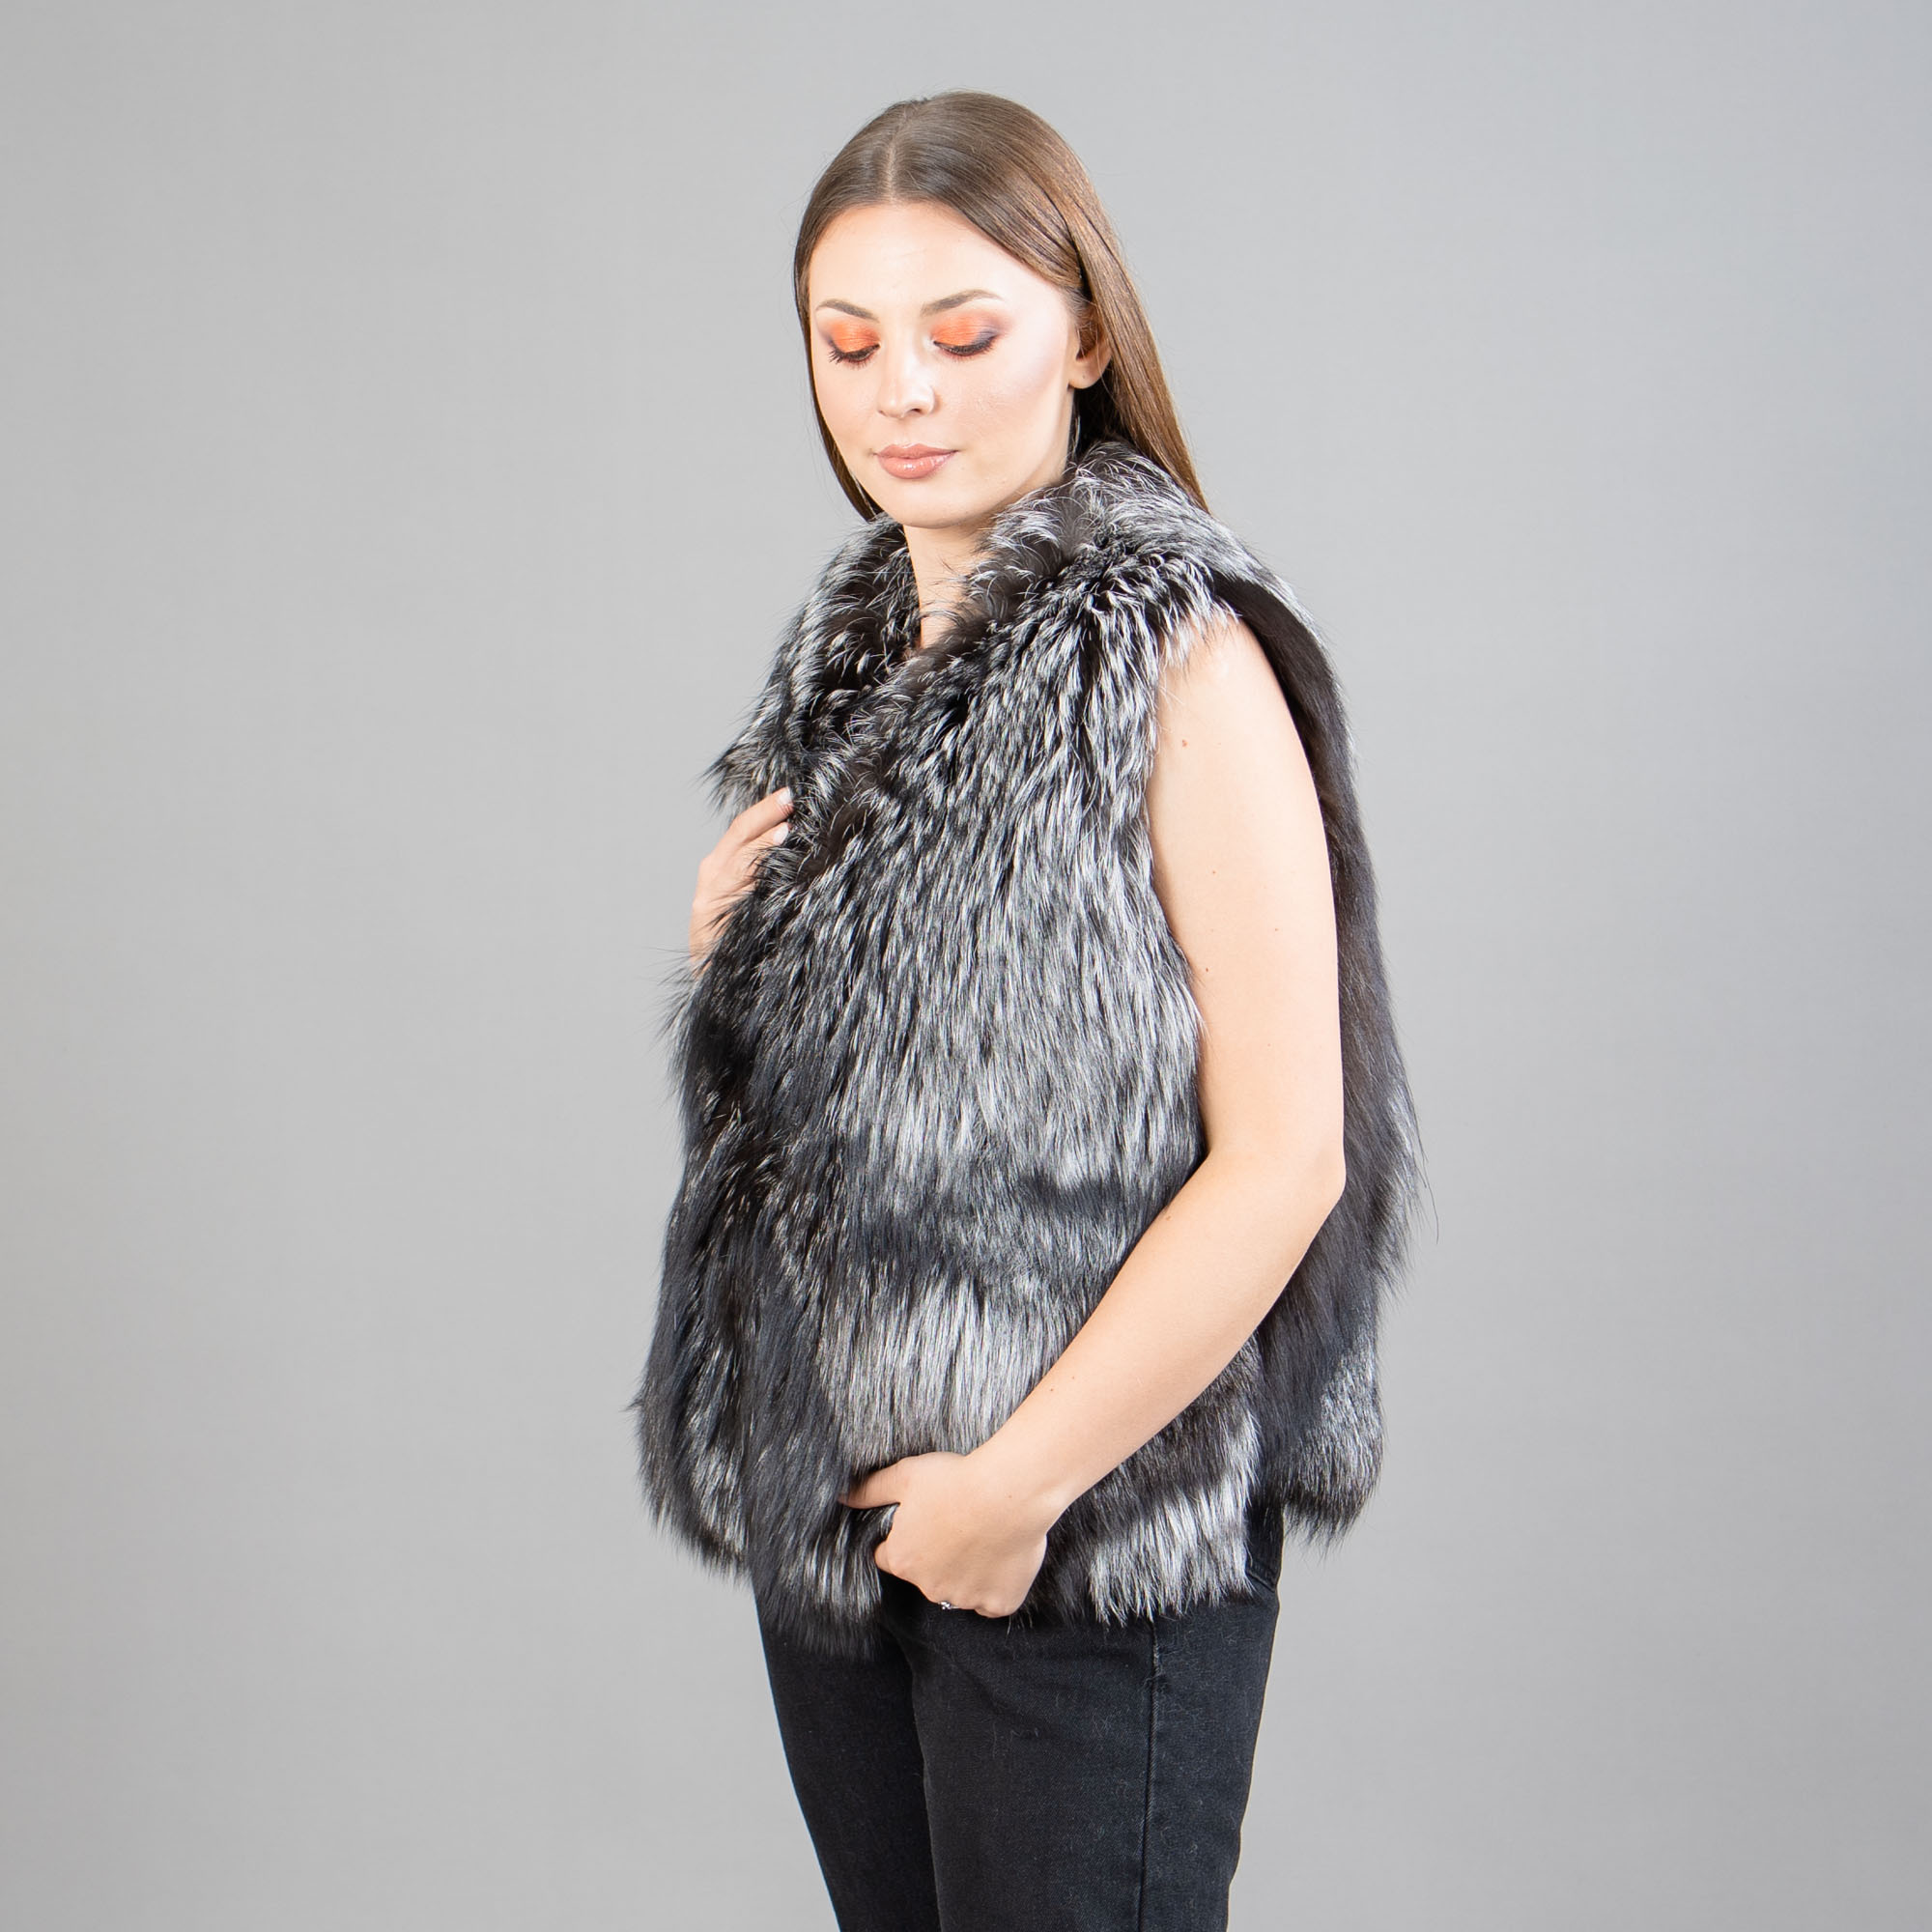 Fox fur vest in silver color